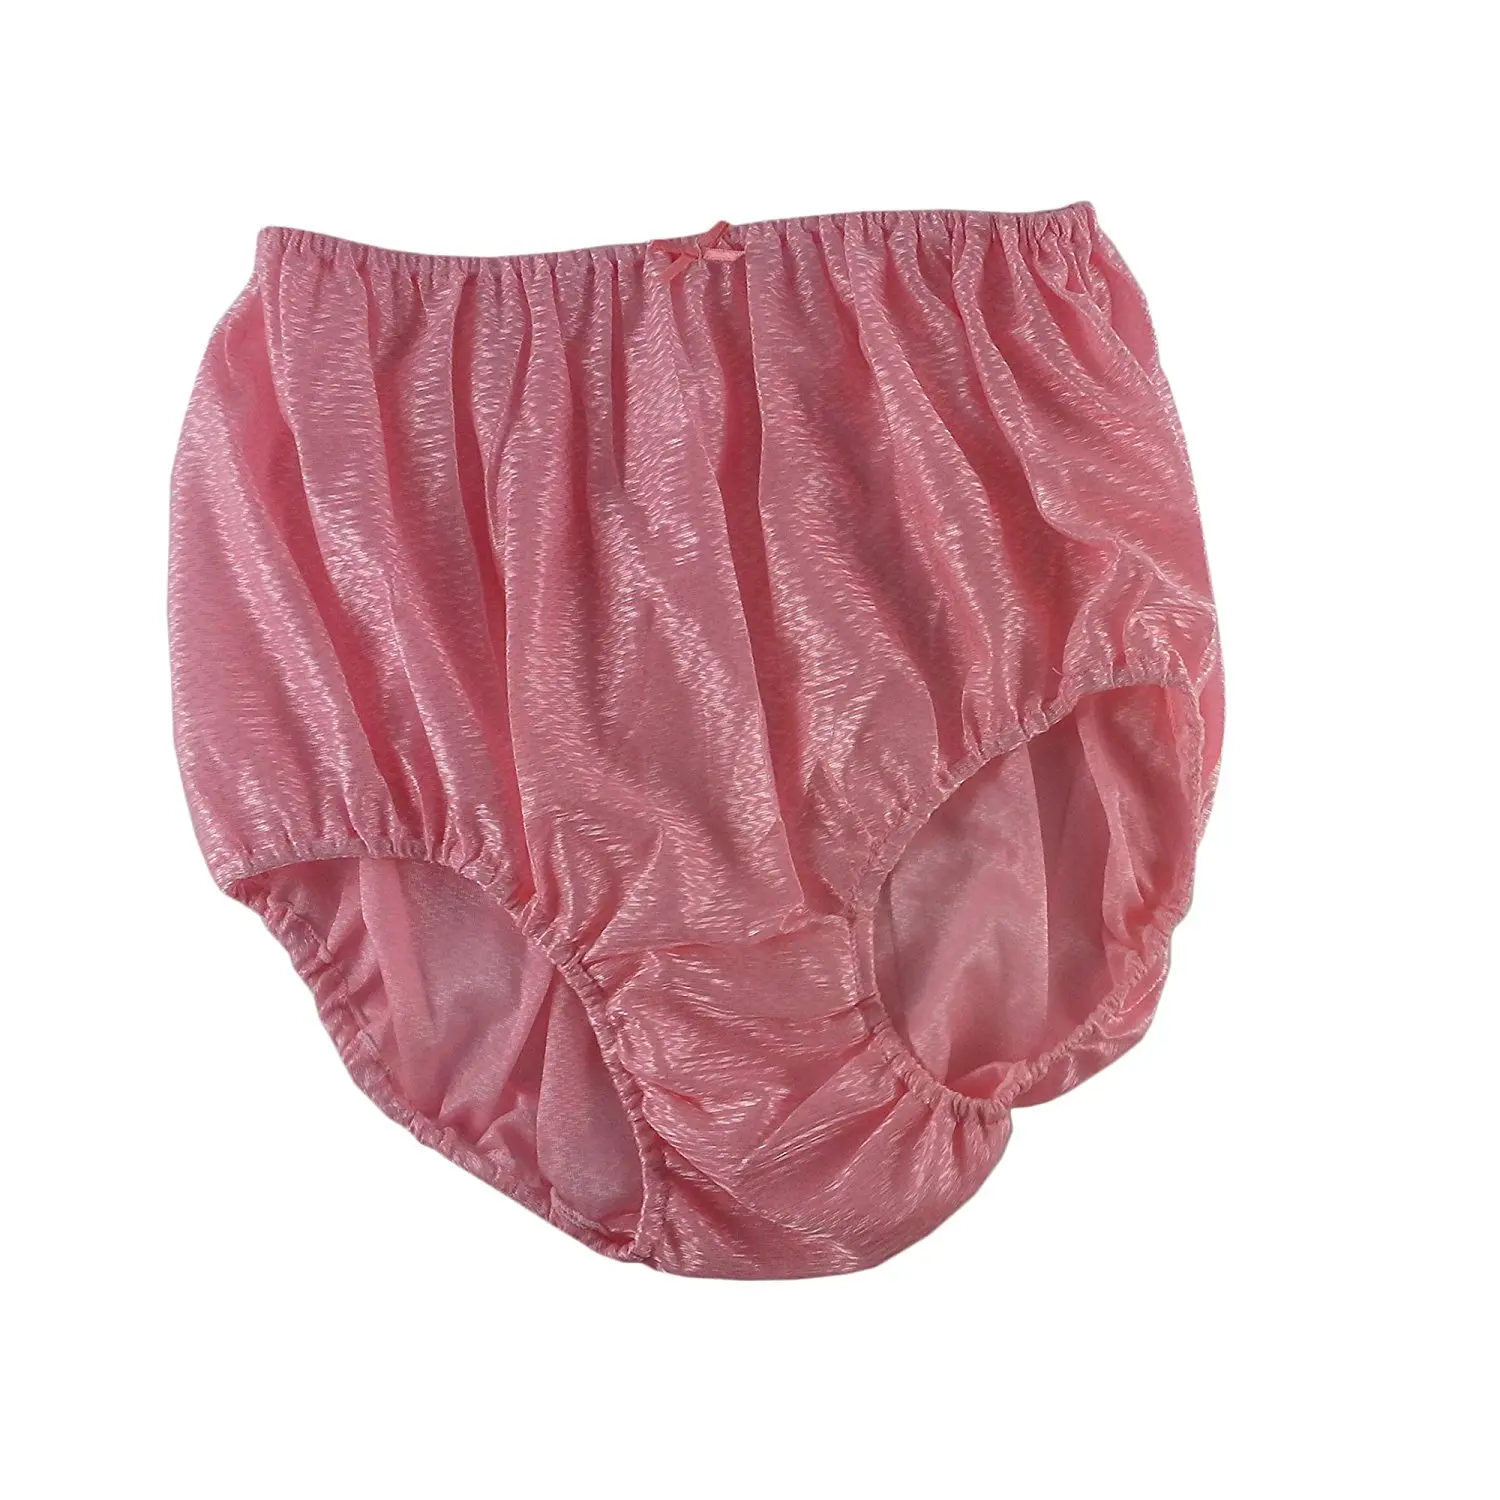 Cheap Sissy Nylon Panties Find Sissy Nylon Panties Deals